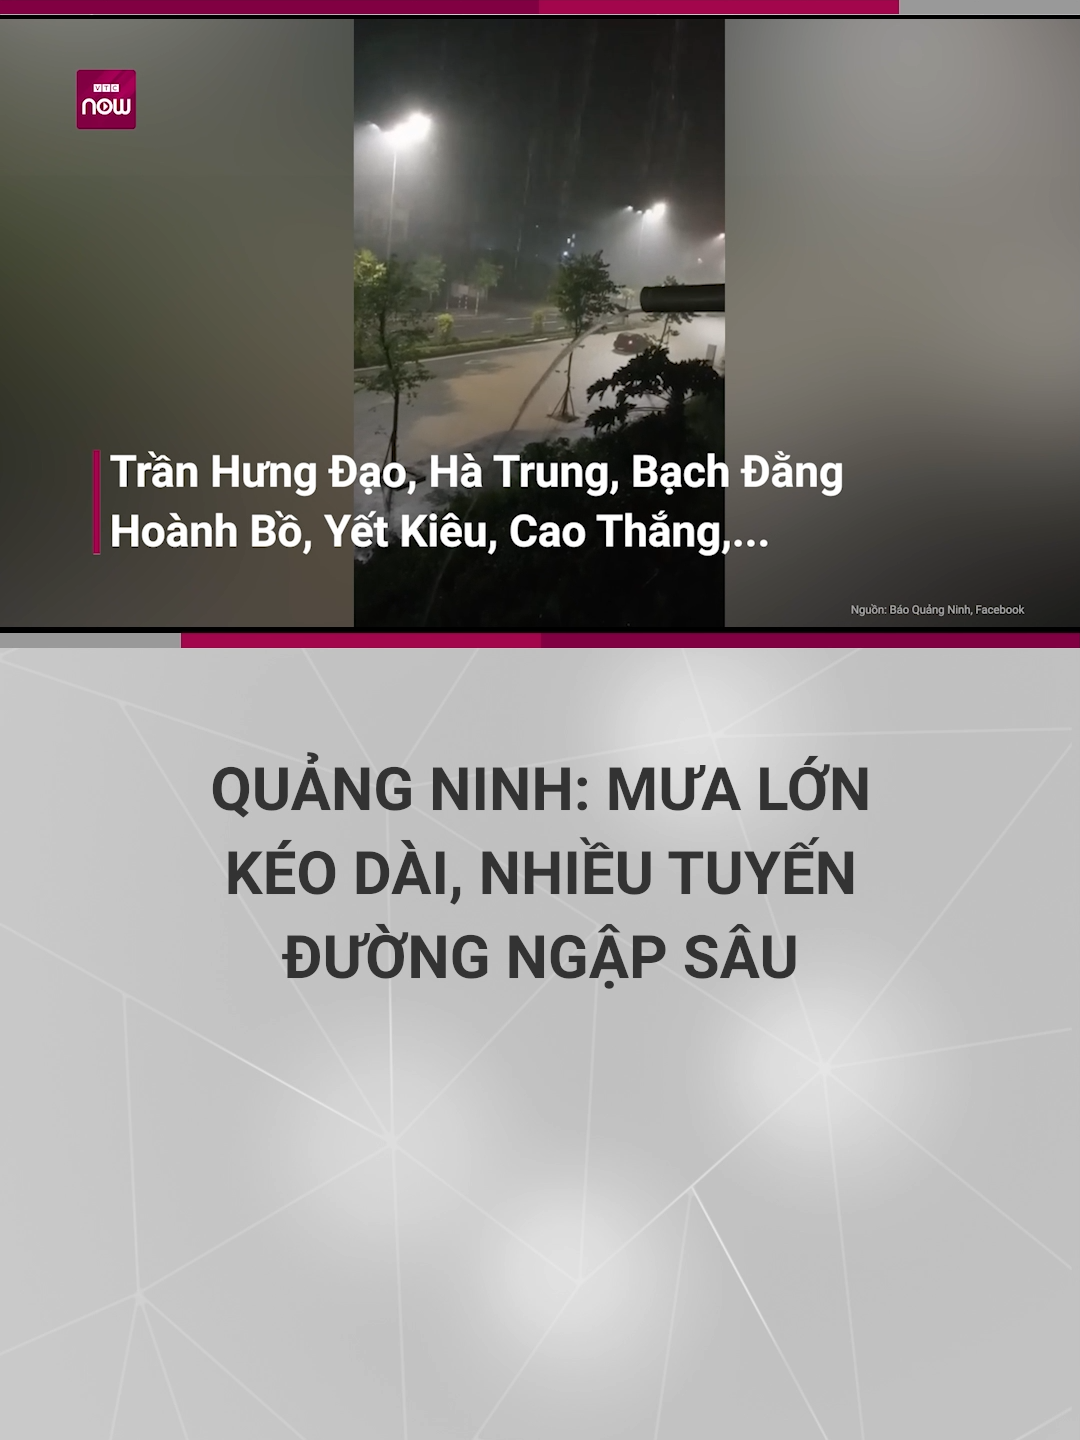 Quảng Ninh: Mưa lớn kéo dài, nhiều tuyến đường ngập sâu #vtcnows #vtc #news #quangninh #lulut #ngap